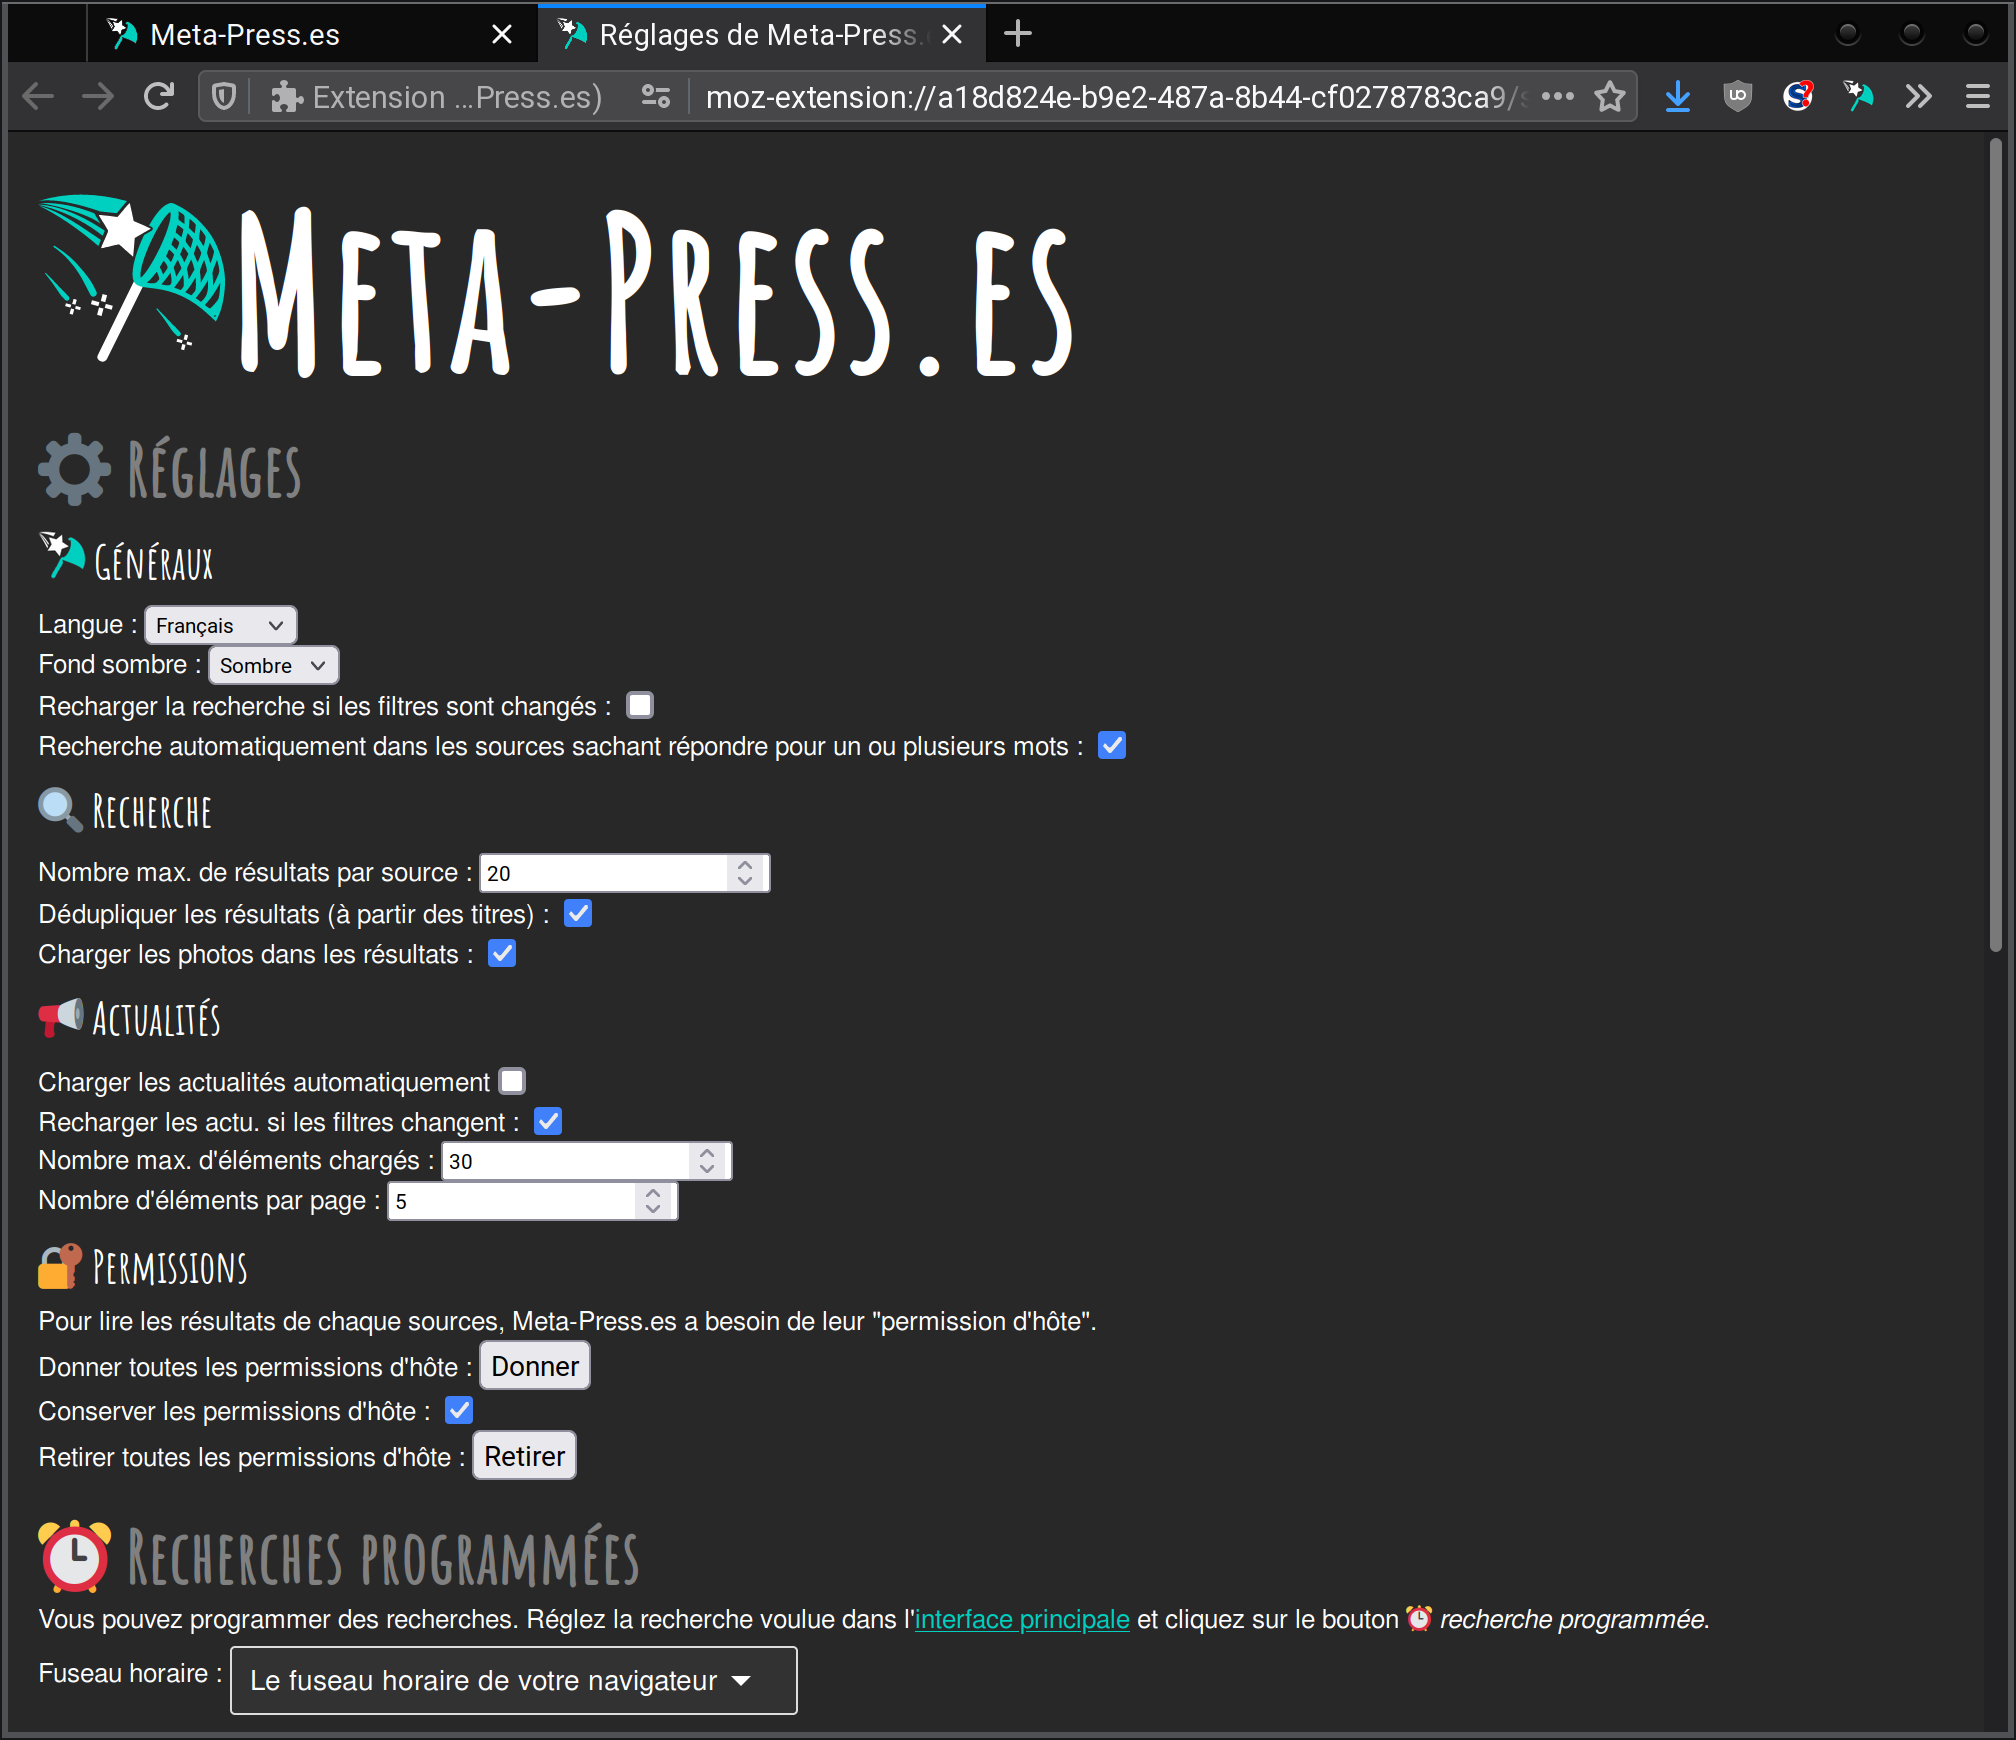 Meta-Press.es